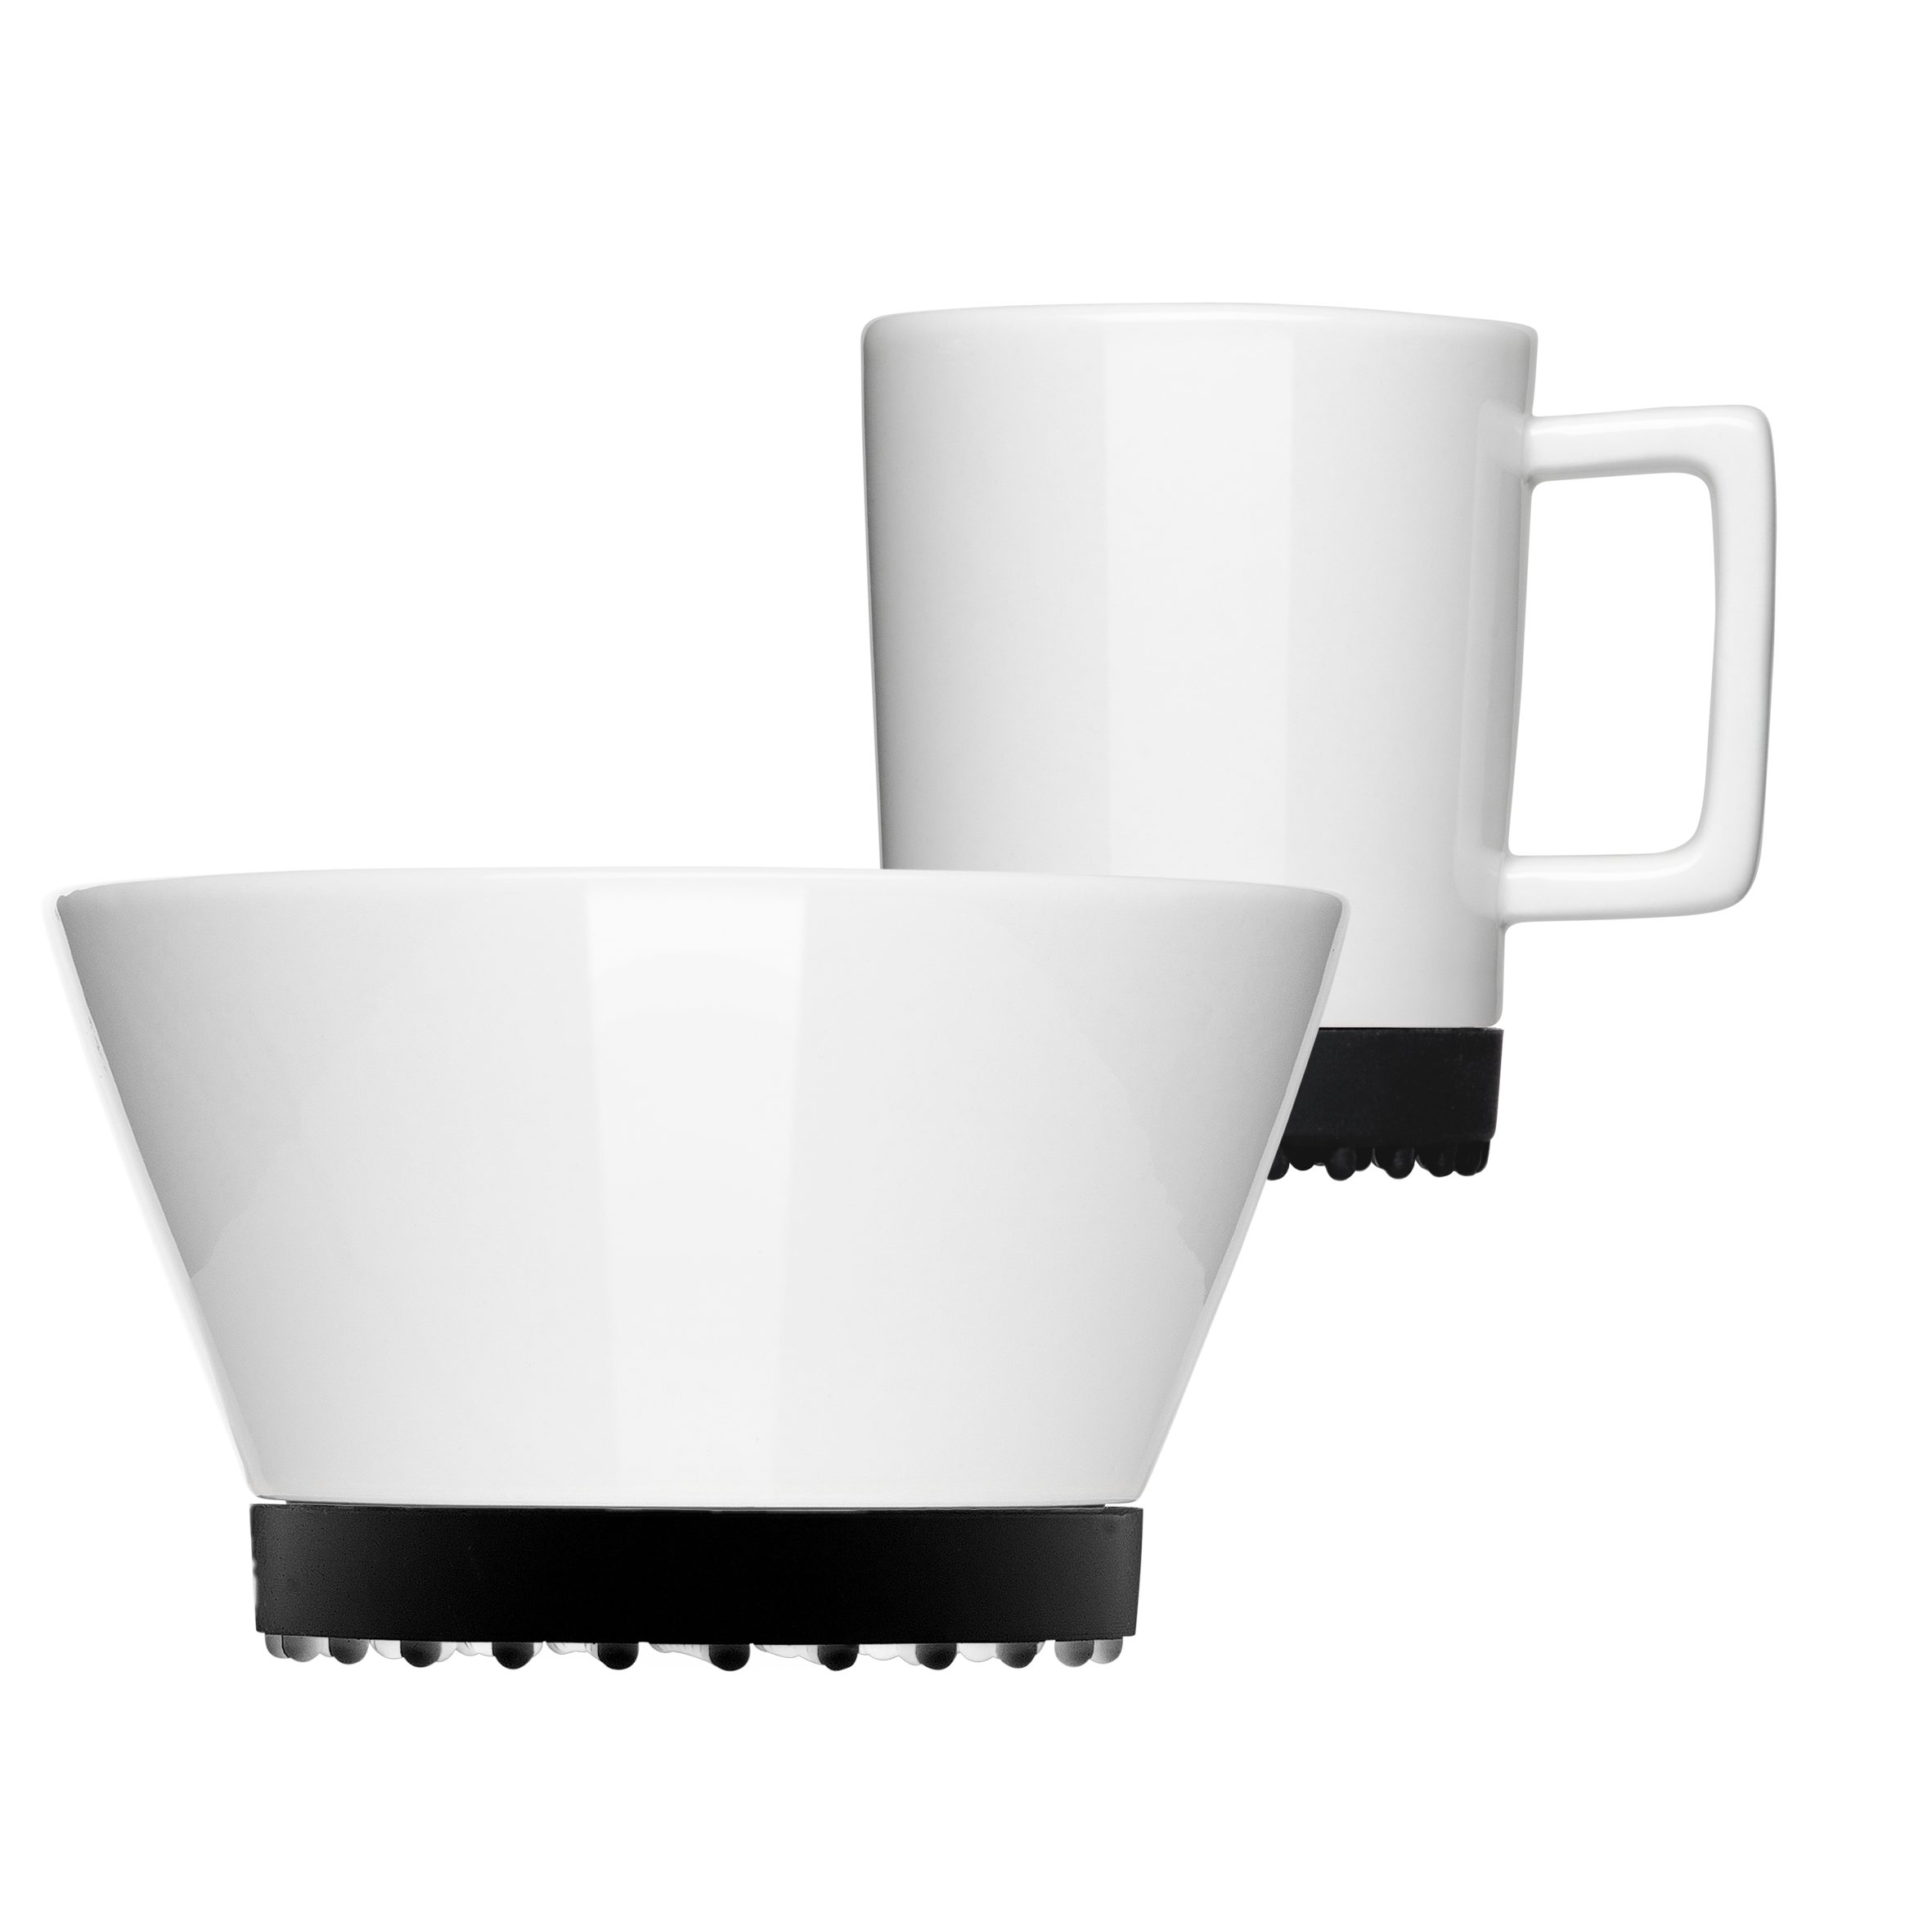 Mahlwerck Frühstücks-Geschirrset Black Porzellan, 1 Personen, spülmaschinengeeignet (2-tlg), 2-teilig, mikrowellengeeignet, Manufaktur SoftPad